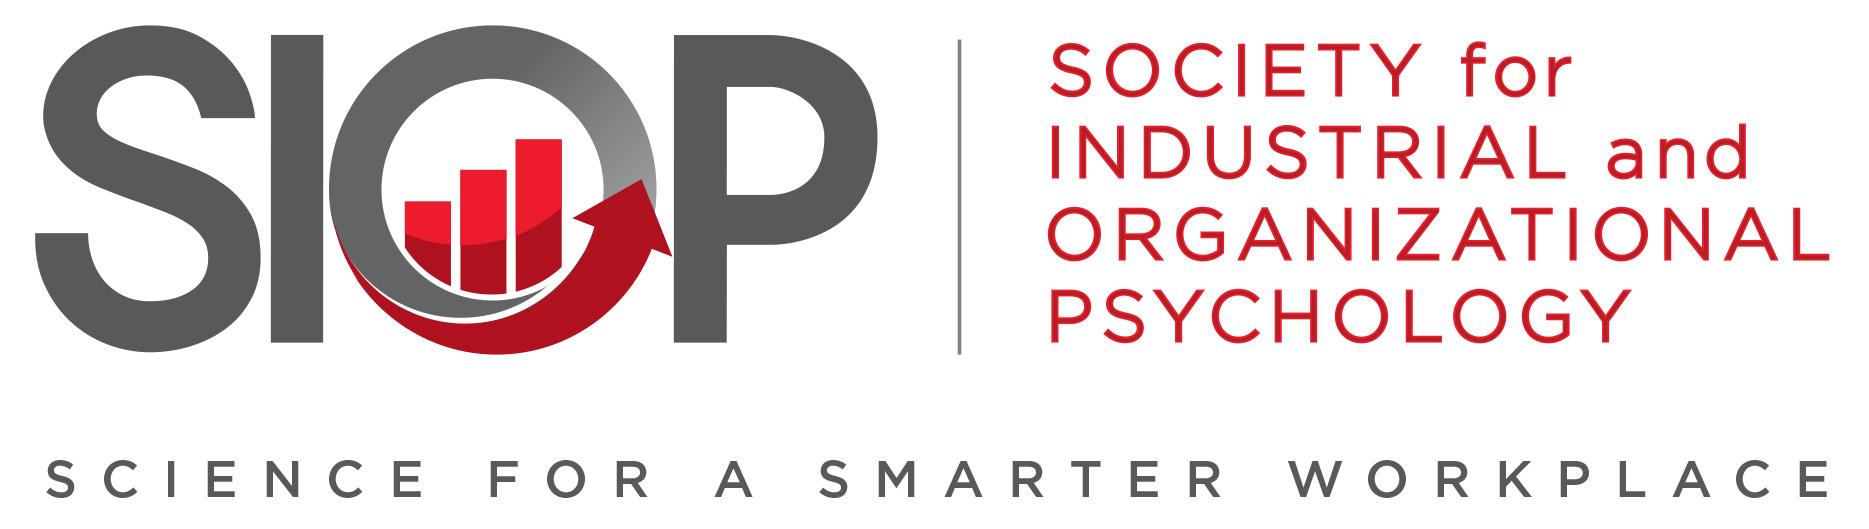 روانشناسی صنعتی و سازمانی چیست - جامعه روانشناسی صنعتی و سازمانی